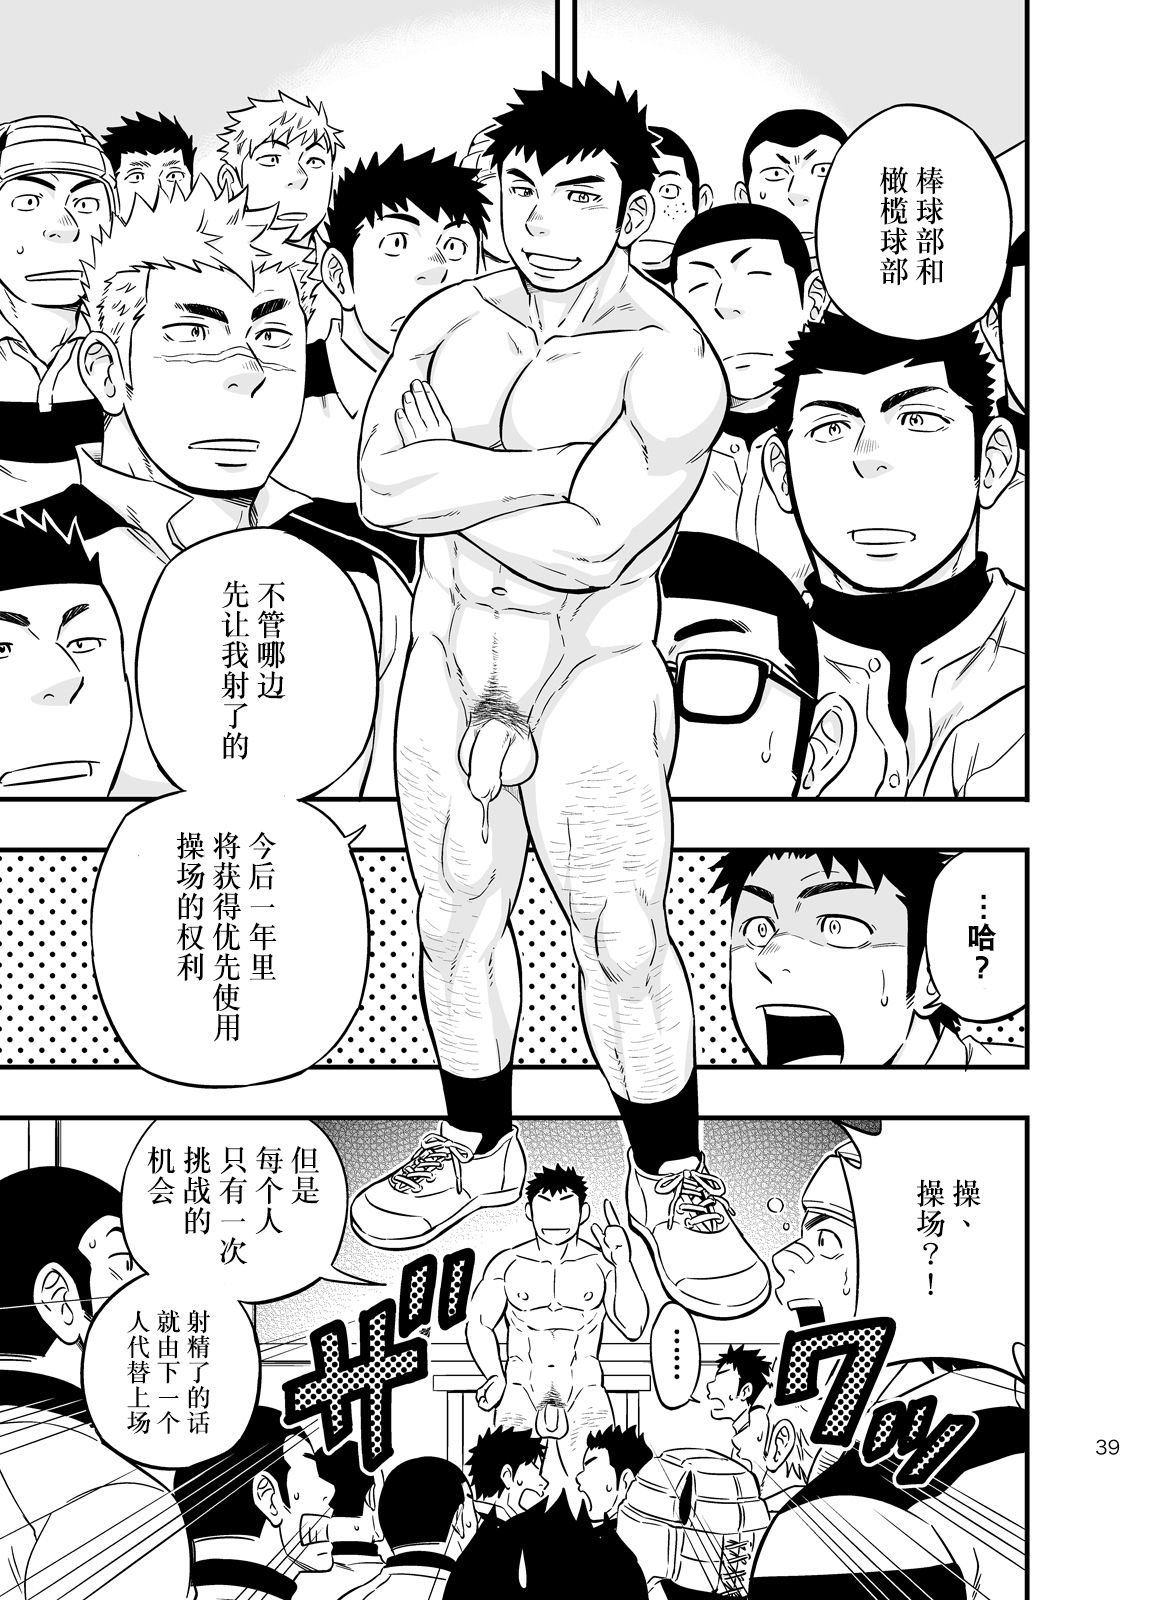 Moshimo Danshikou no Hoken Taiiku ga Jitsugi Ari Dattara 2 | 如果男校的保健体育课有实践环节的话 2